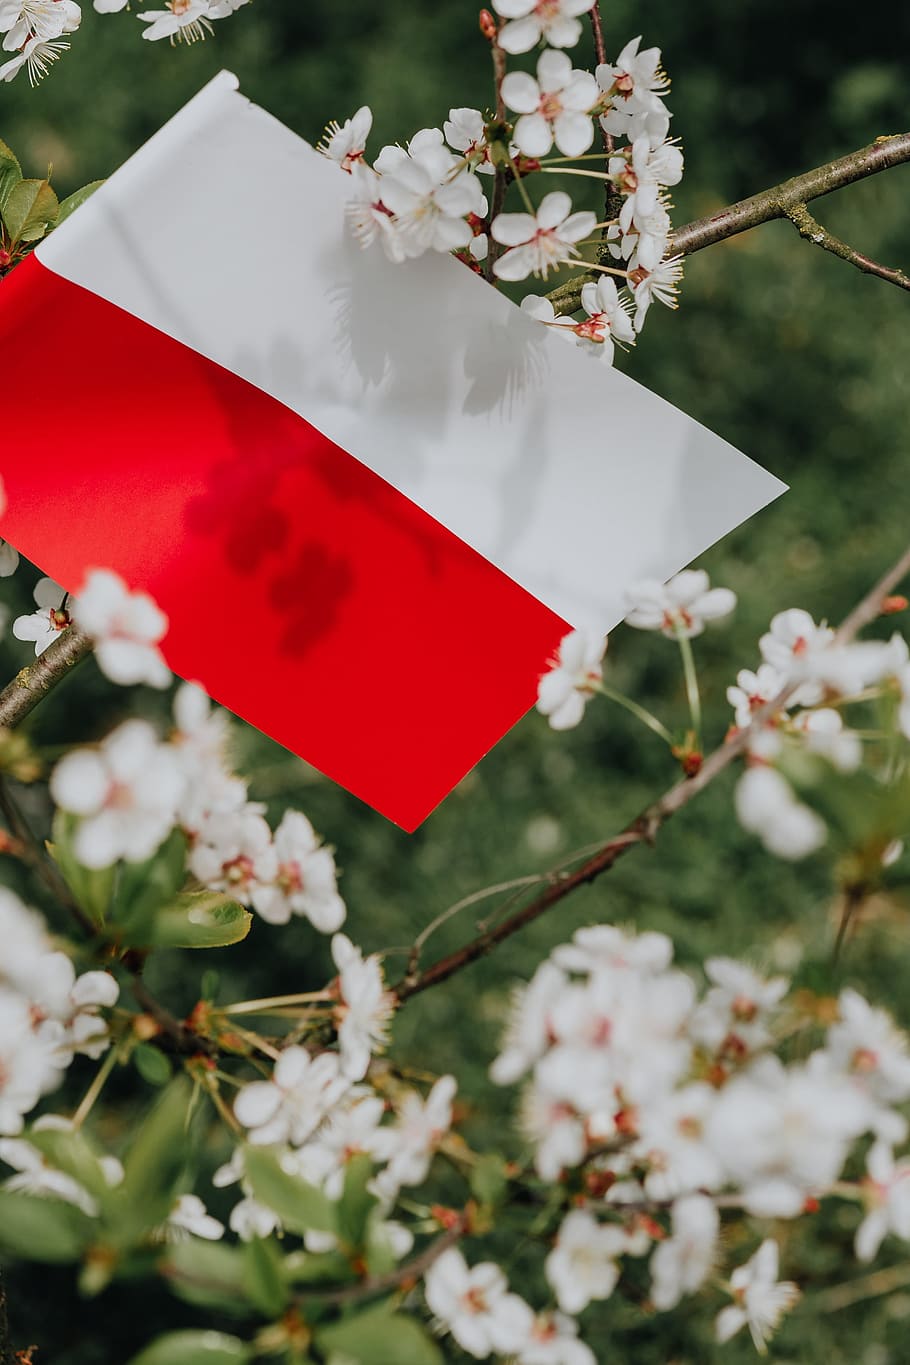 bandera, -, polska flaga, naturaleza, polonia, europa, árbol, polaco, polska, nacional